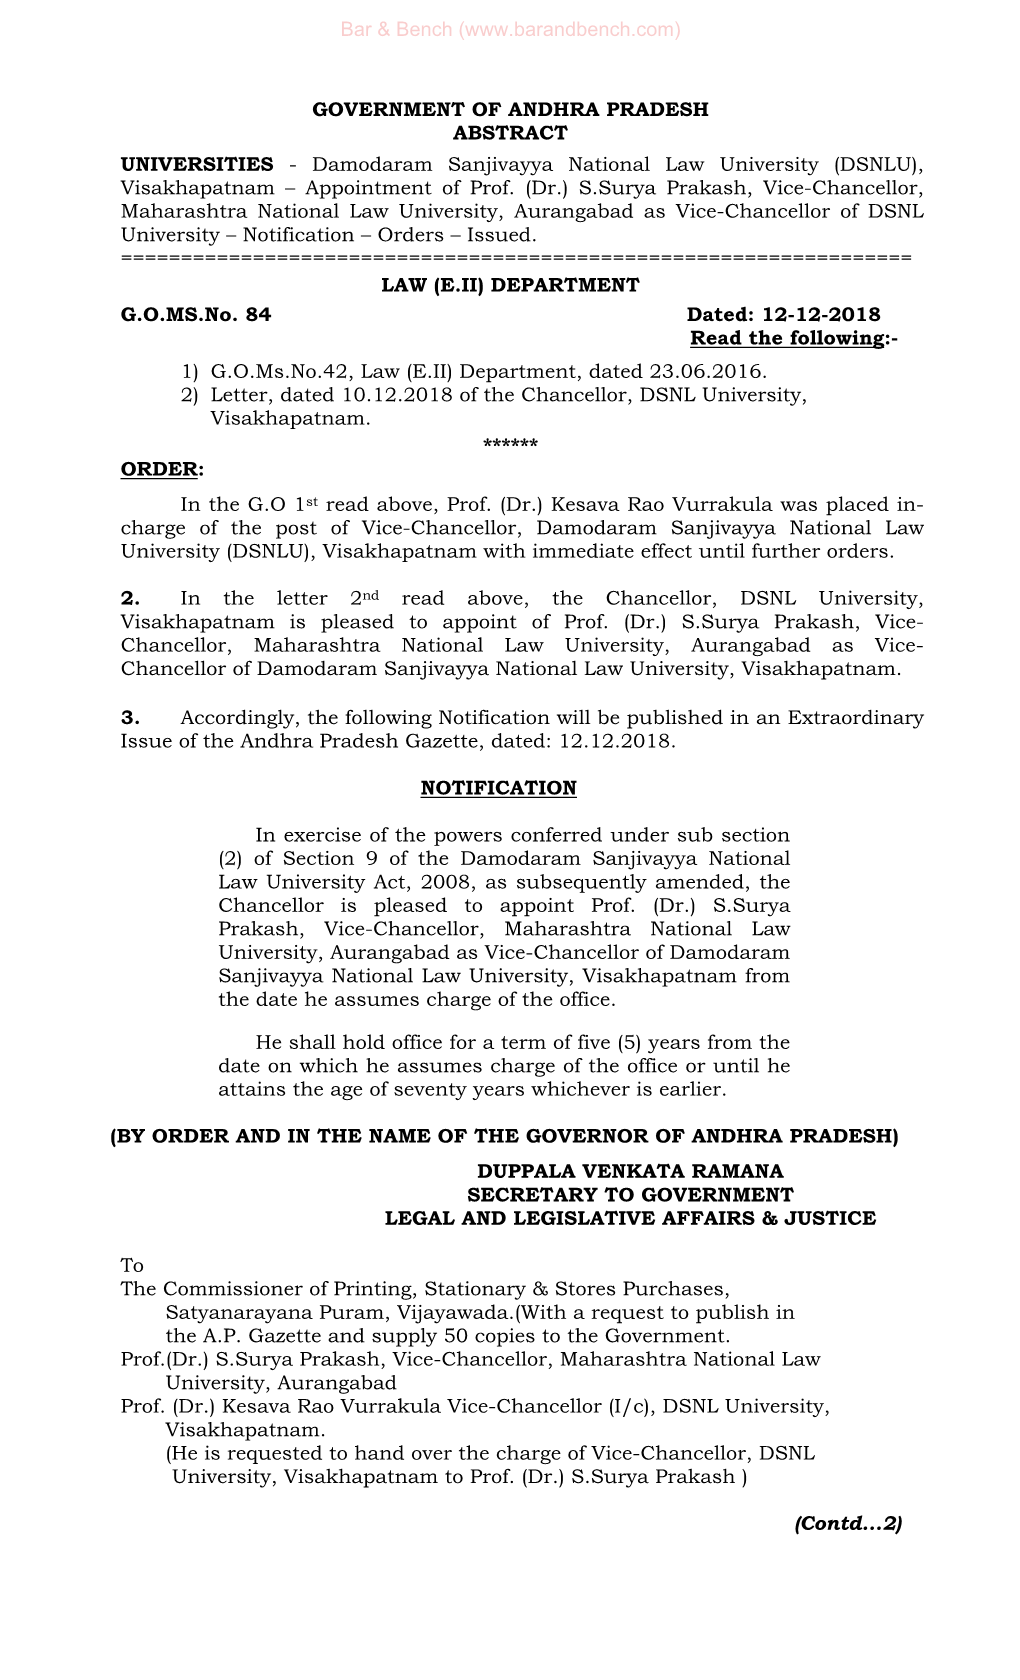 Damodaram Sanjivayya National Law University (DSNLU), Visakhapatnam – Appointment of Prof